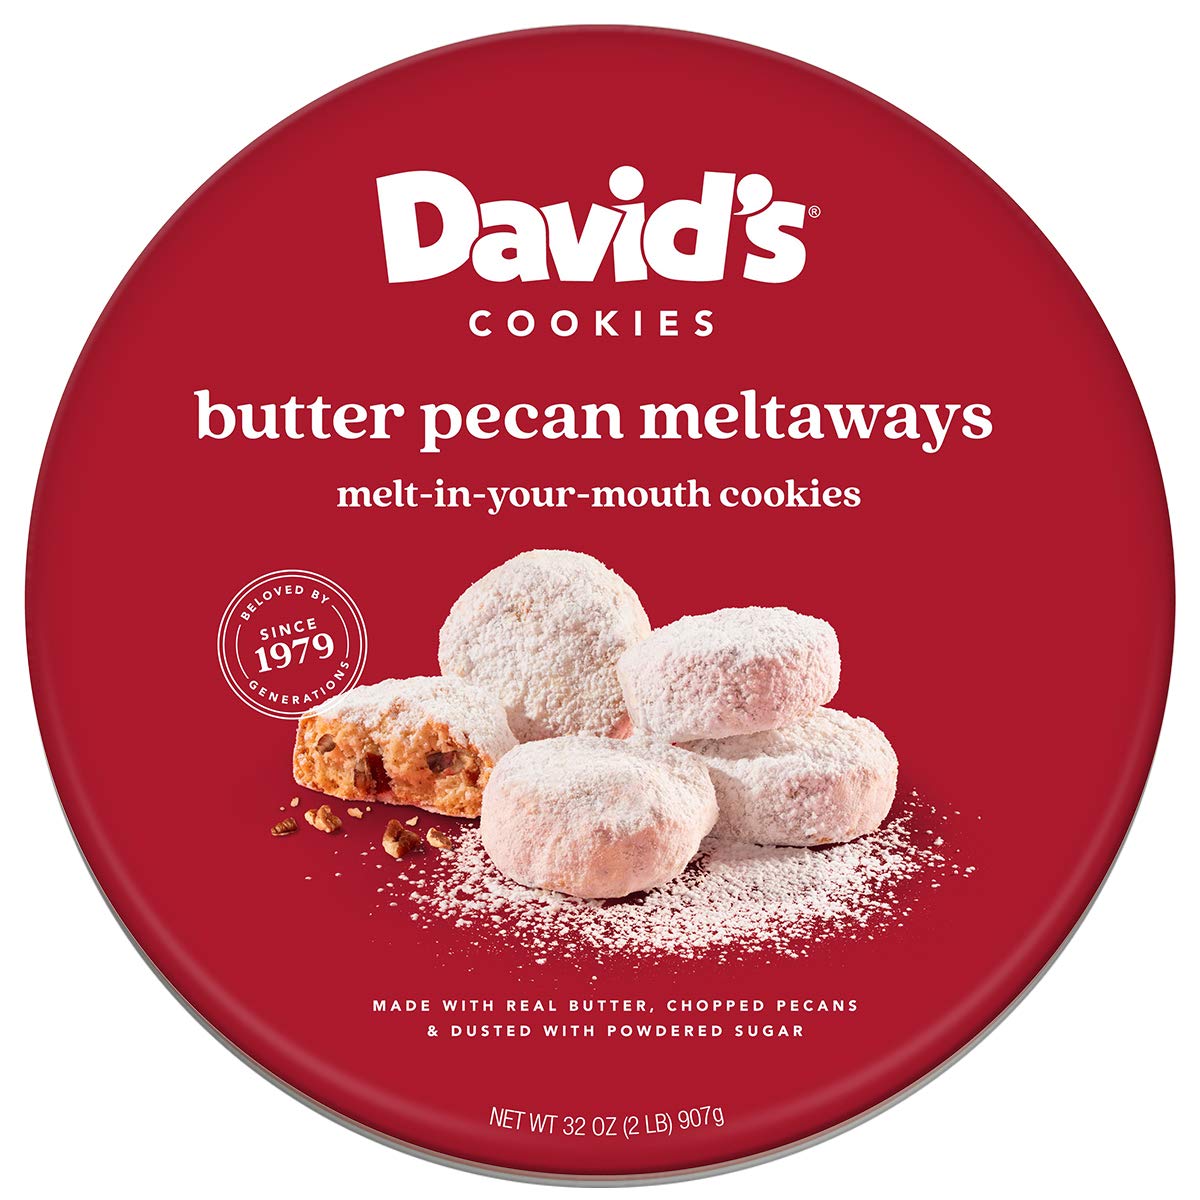 David's Cookies Pecan Meltaway Tin Design - Branding by Miller Creative